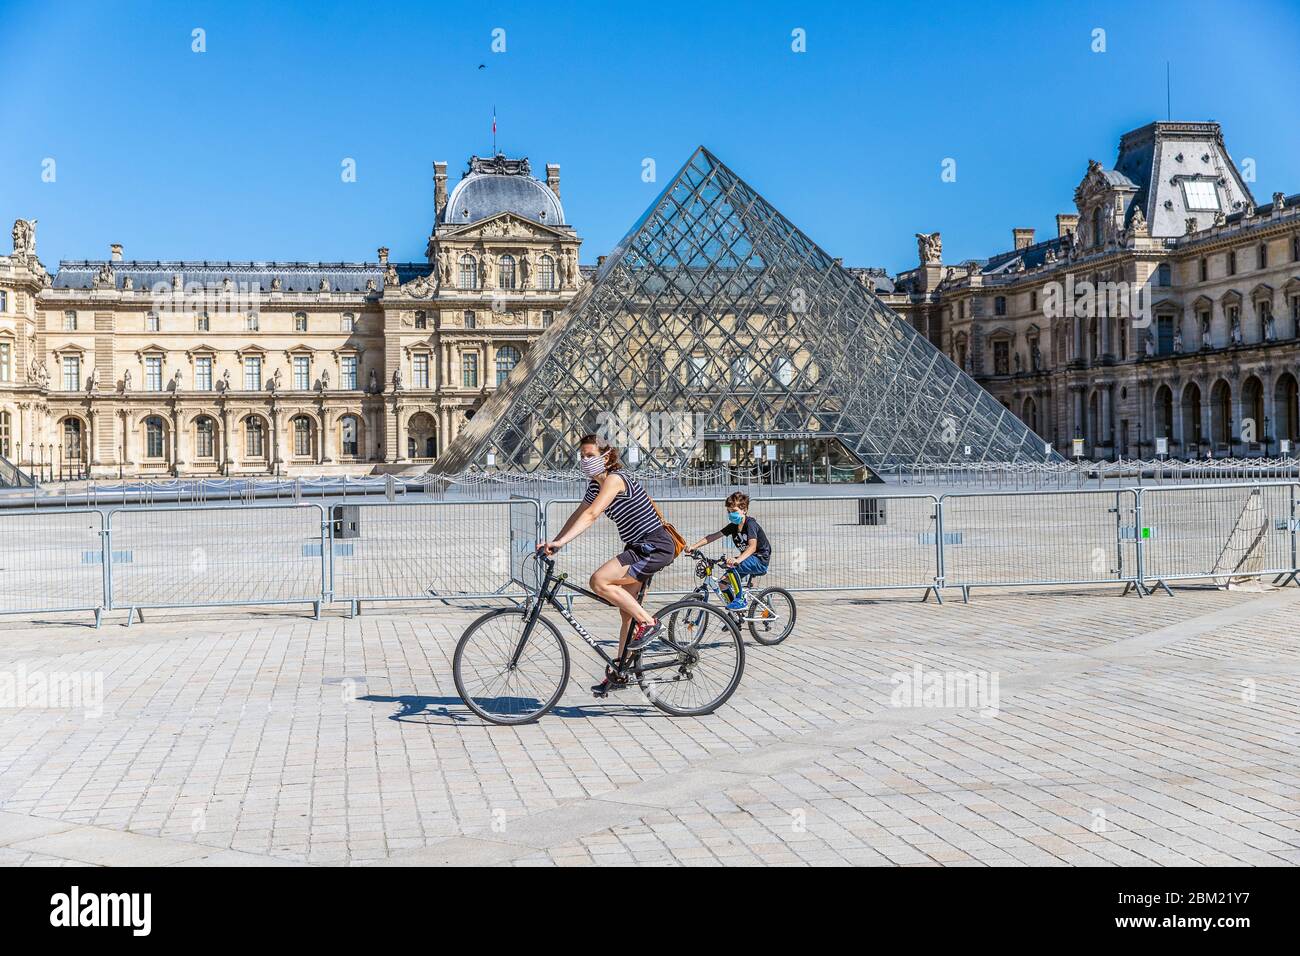 Eine Mutter und ihr Kind fahren vor dem Louvre Pyramide in Paris während der Sperre Coronavirus covid-19 Stockfoto